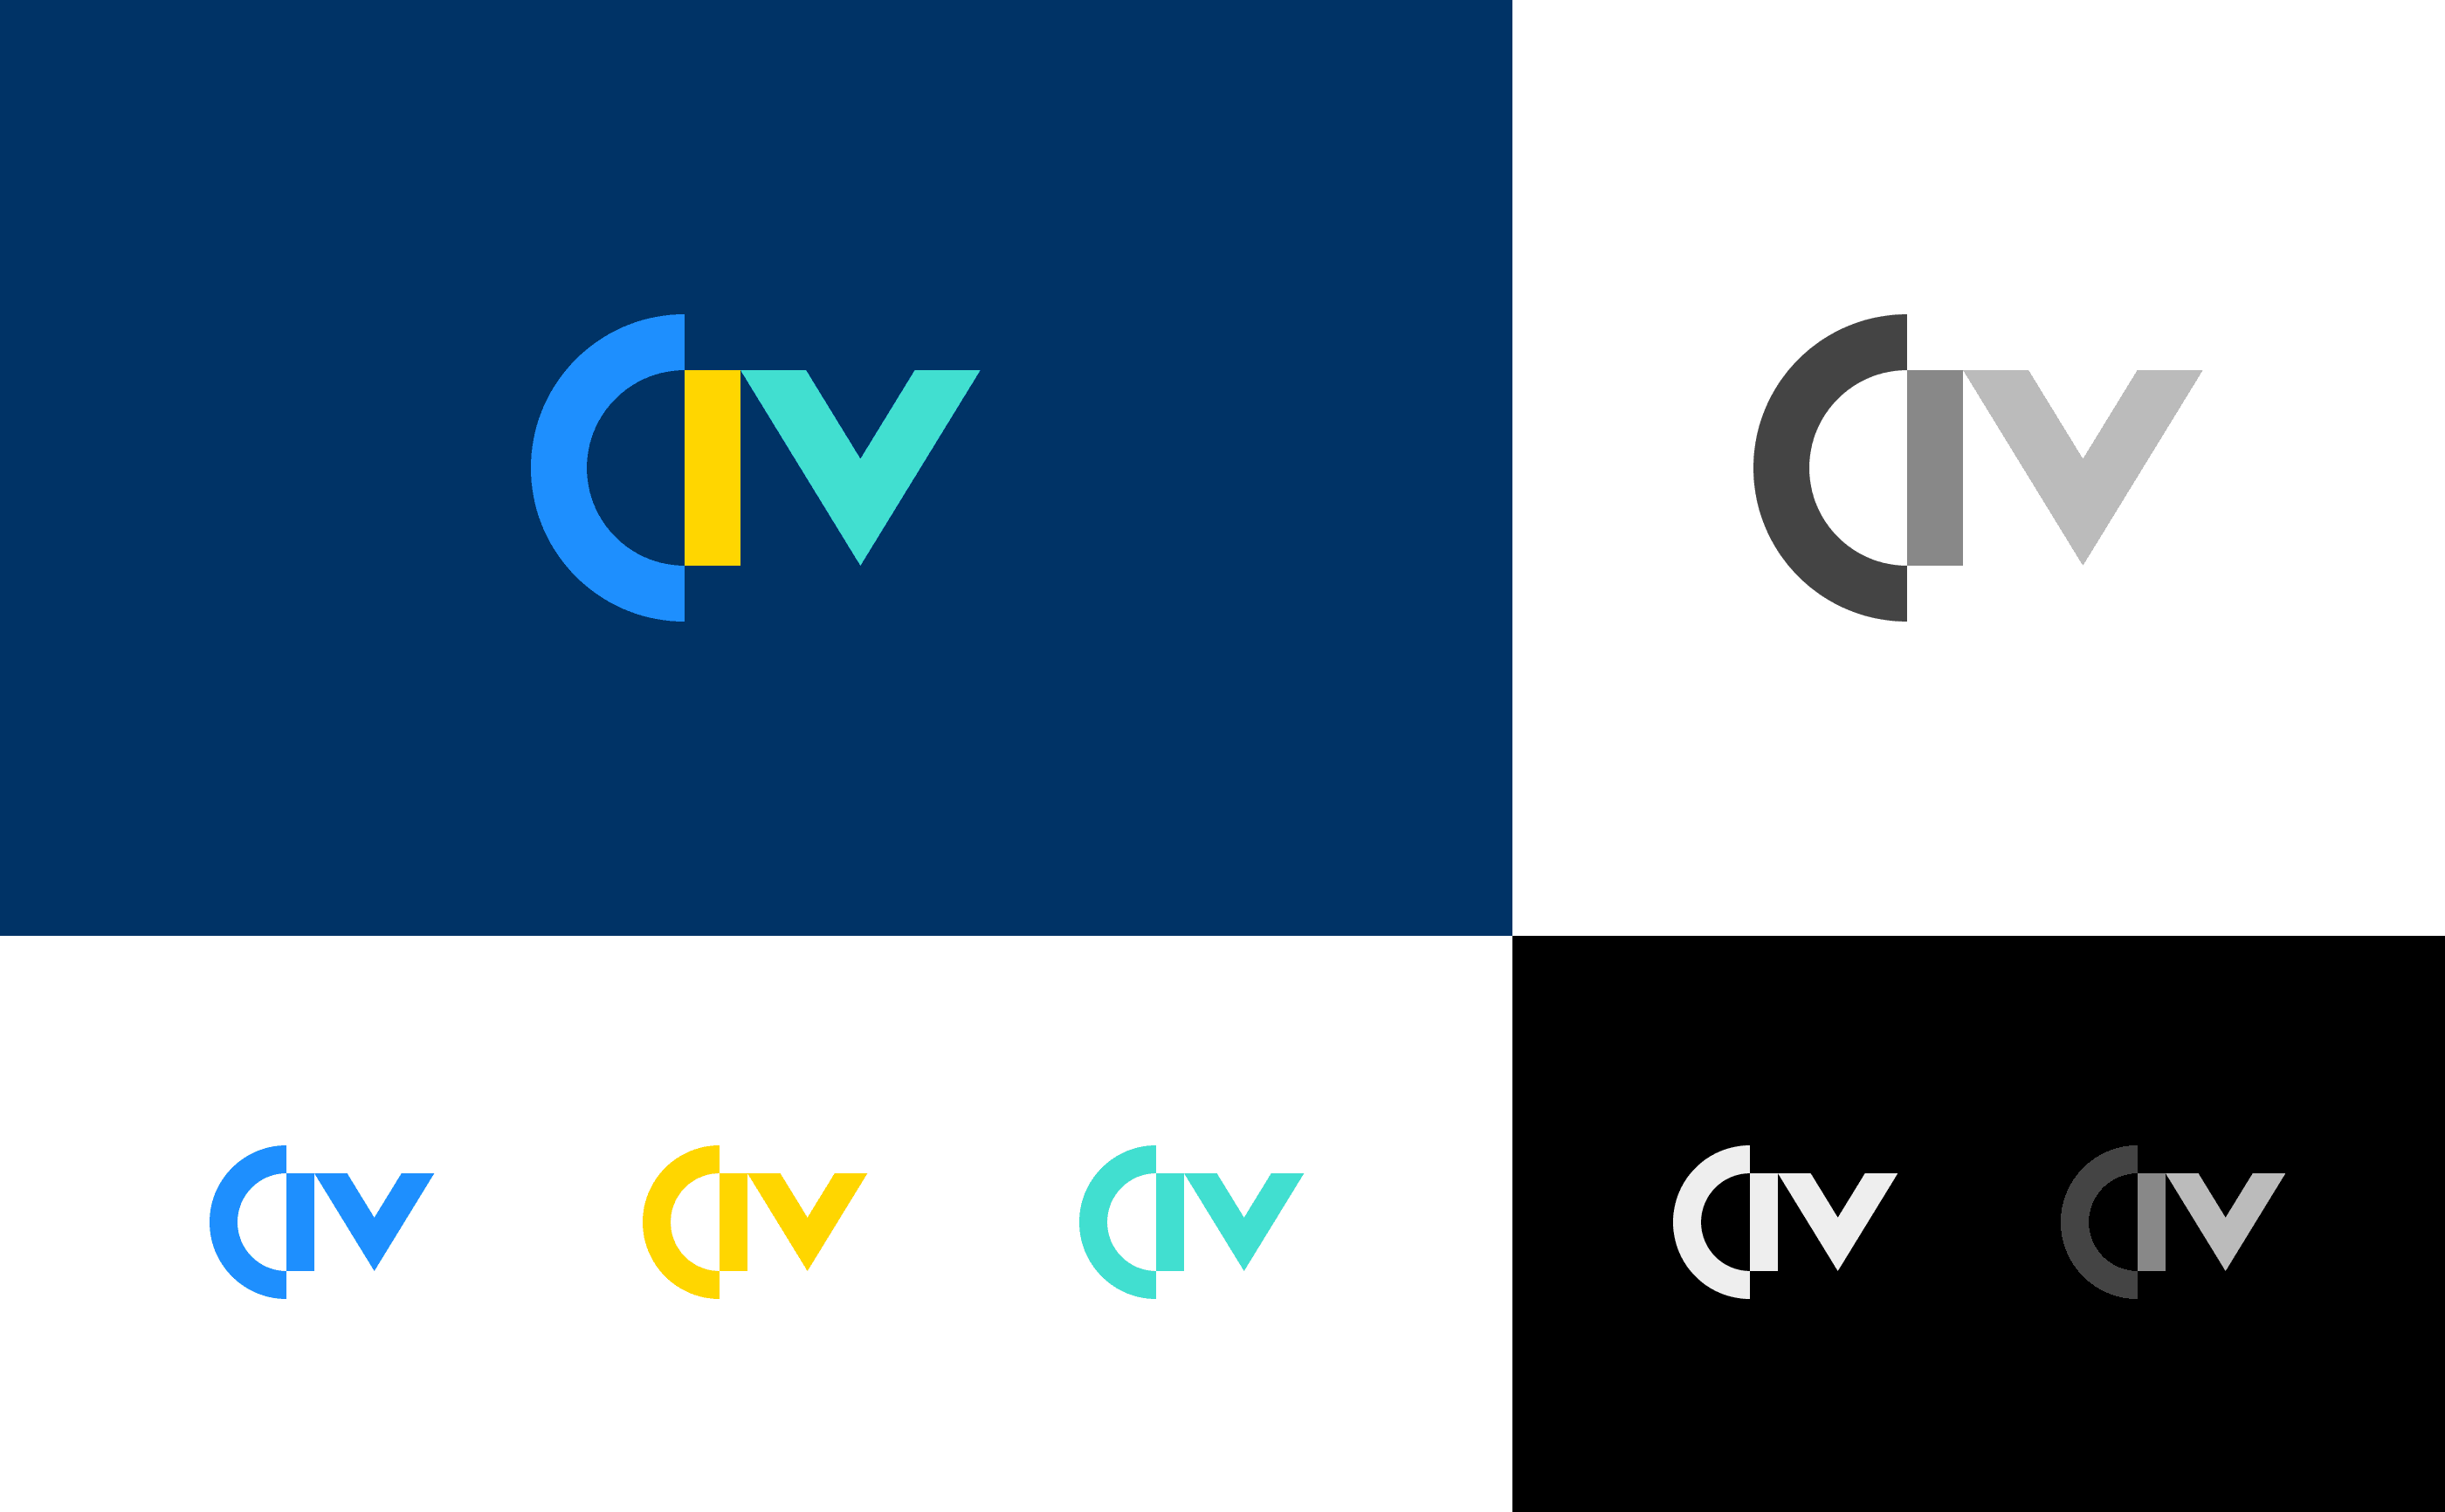 CIV-005